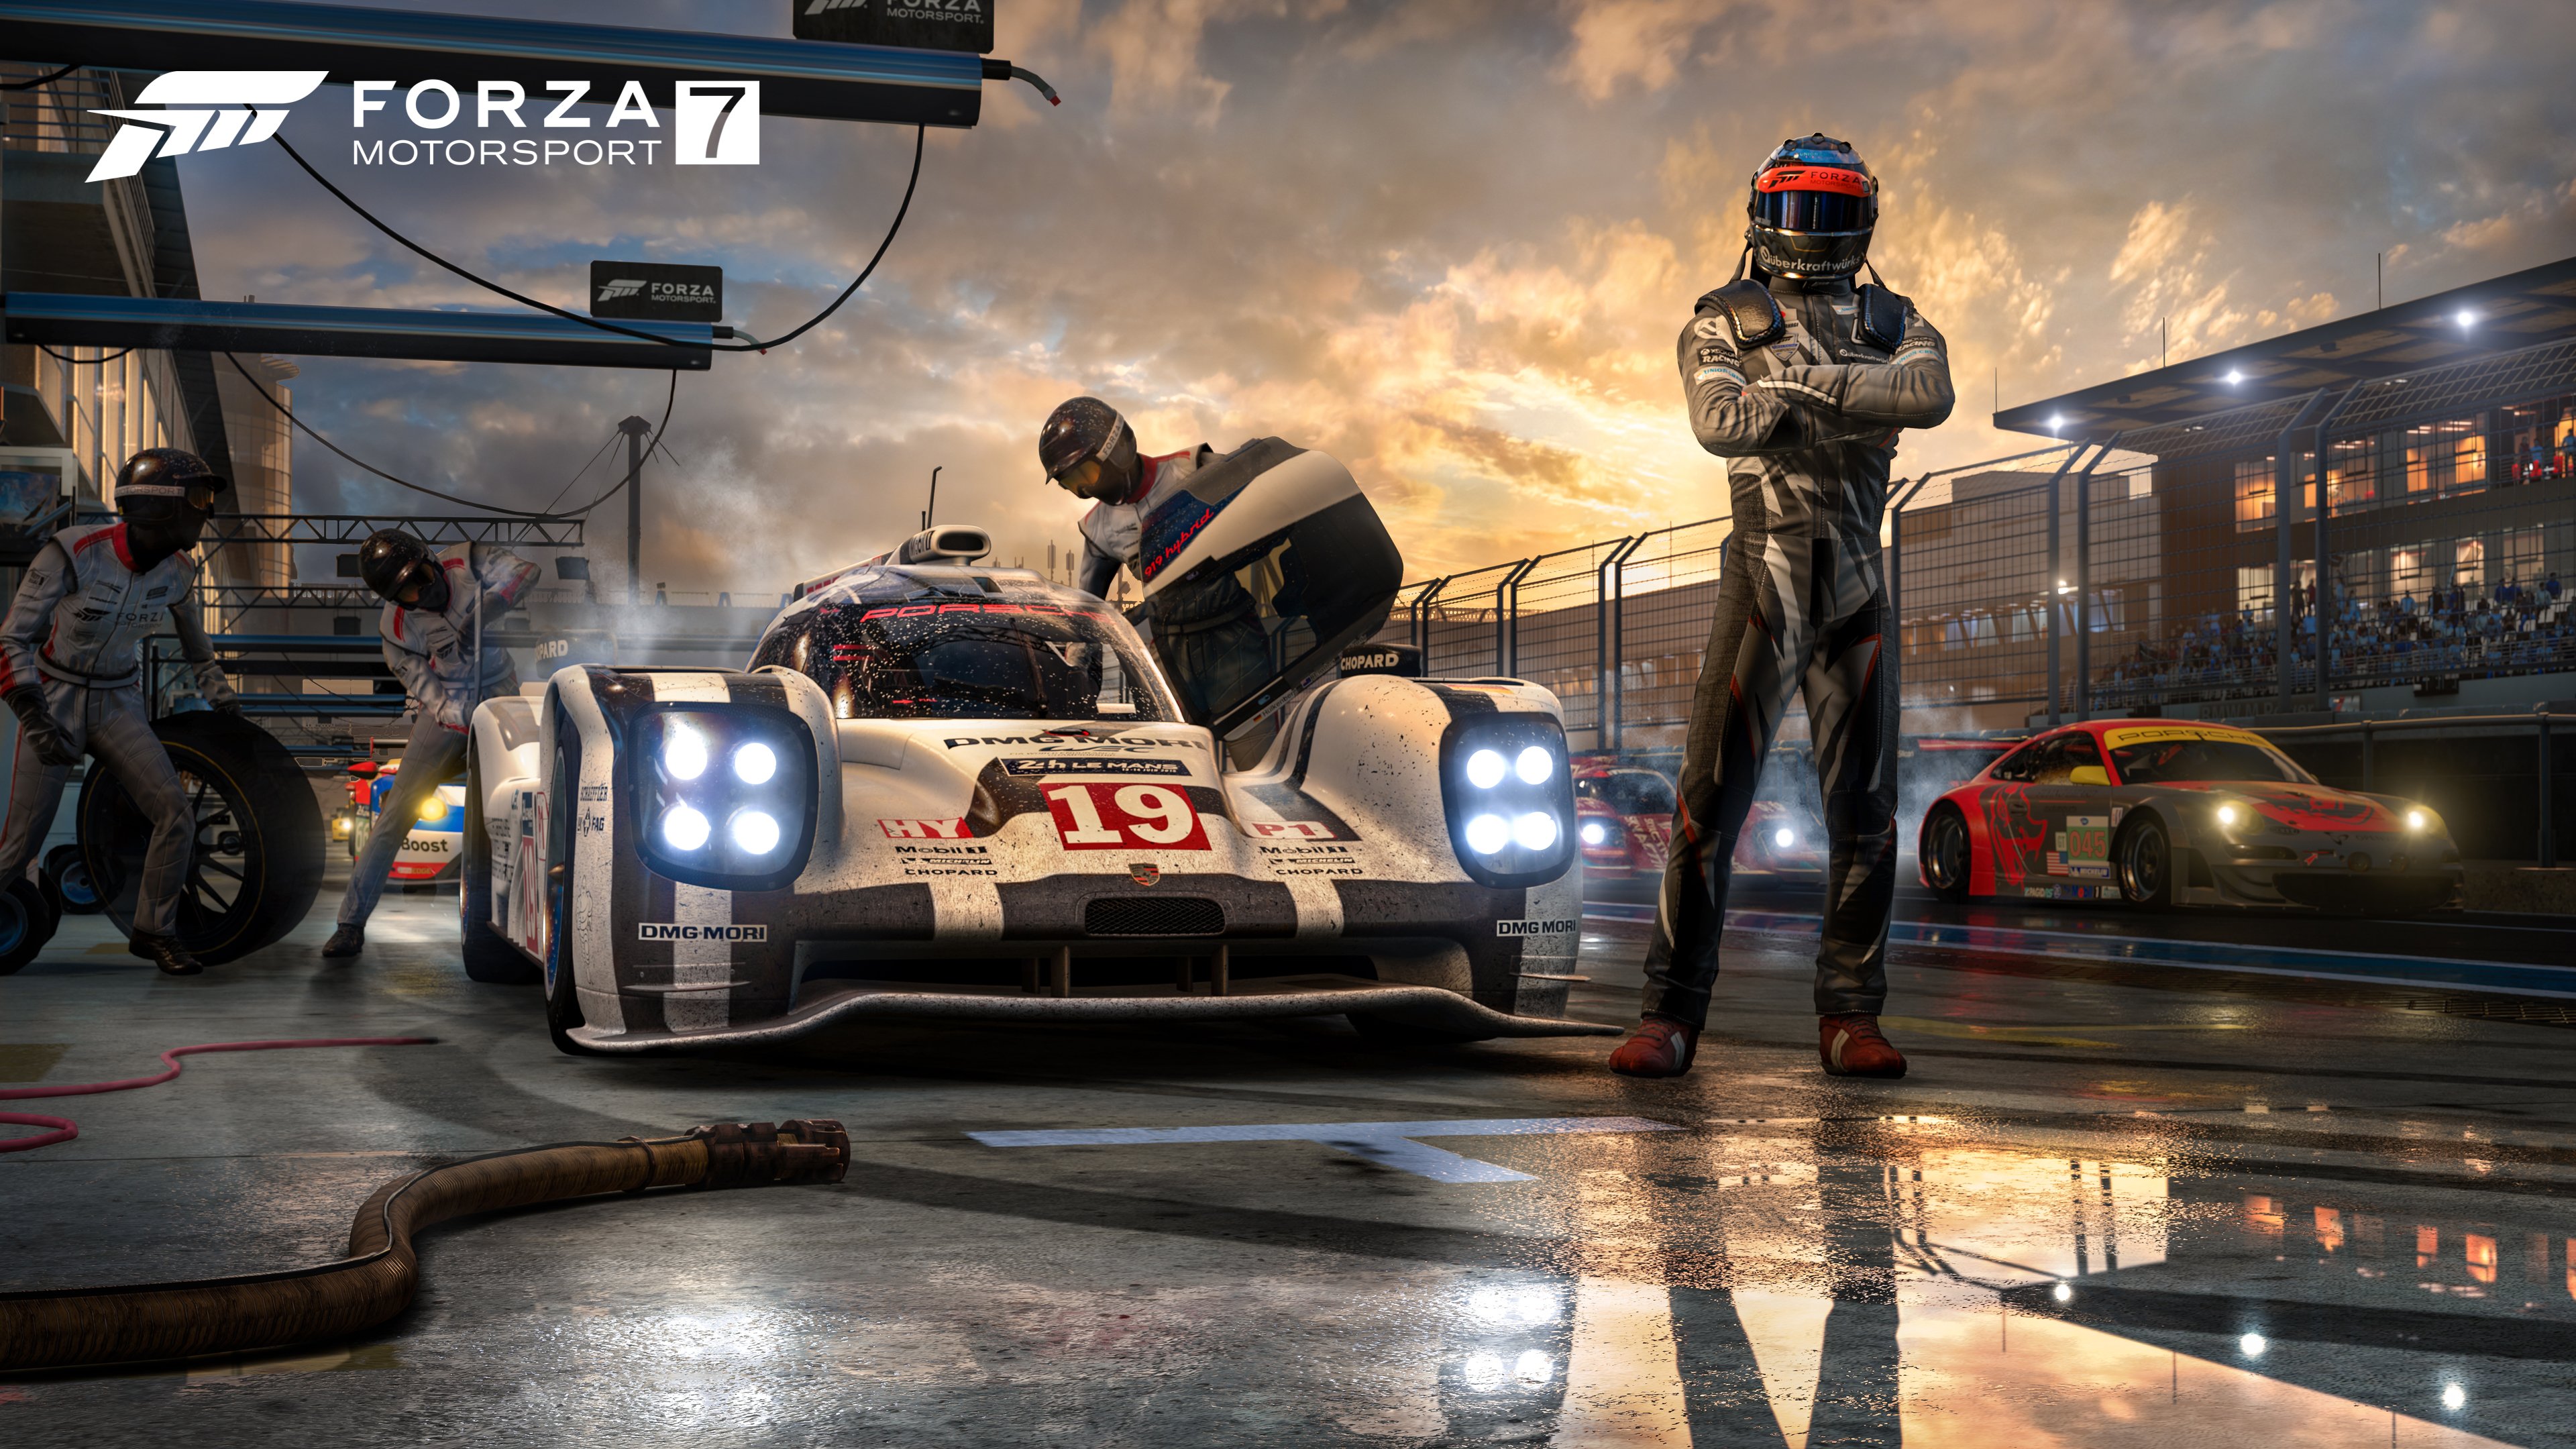 Dicas para jogar Forza 6 no Xbox One e acelerar nas corridas